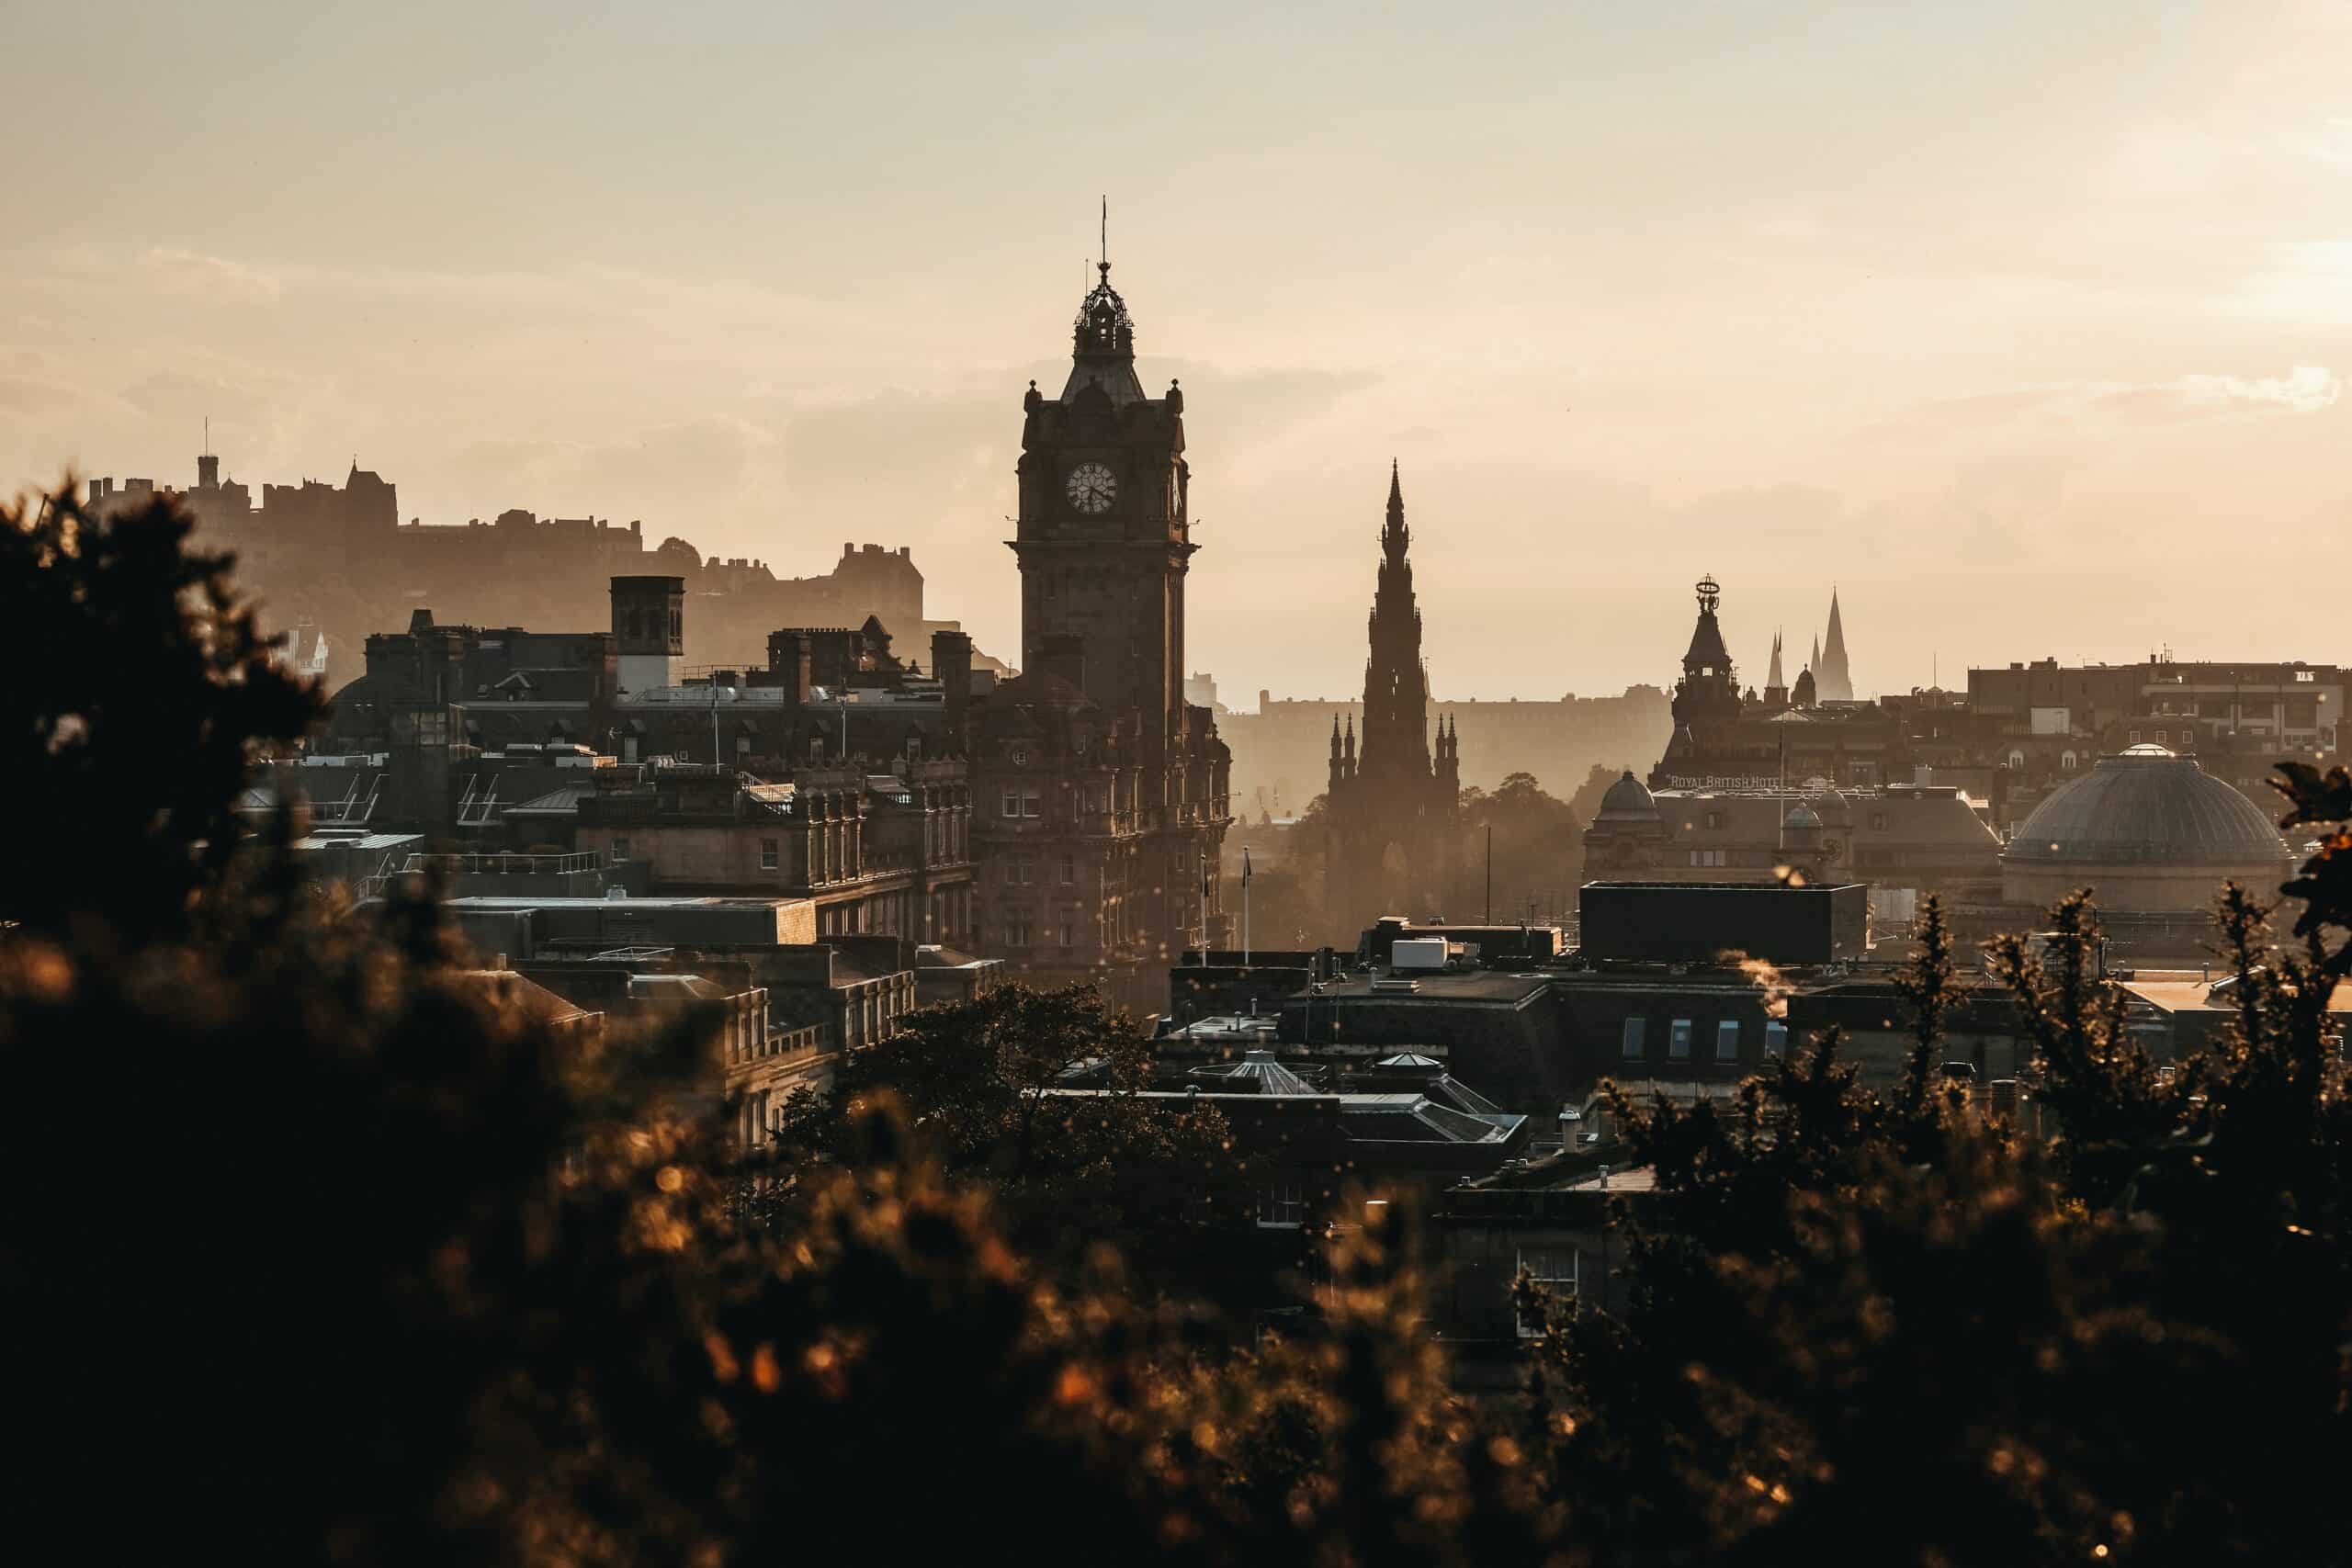 Finance flourishes in Edinburgh